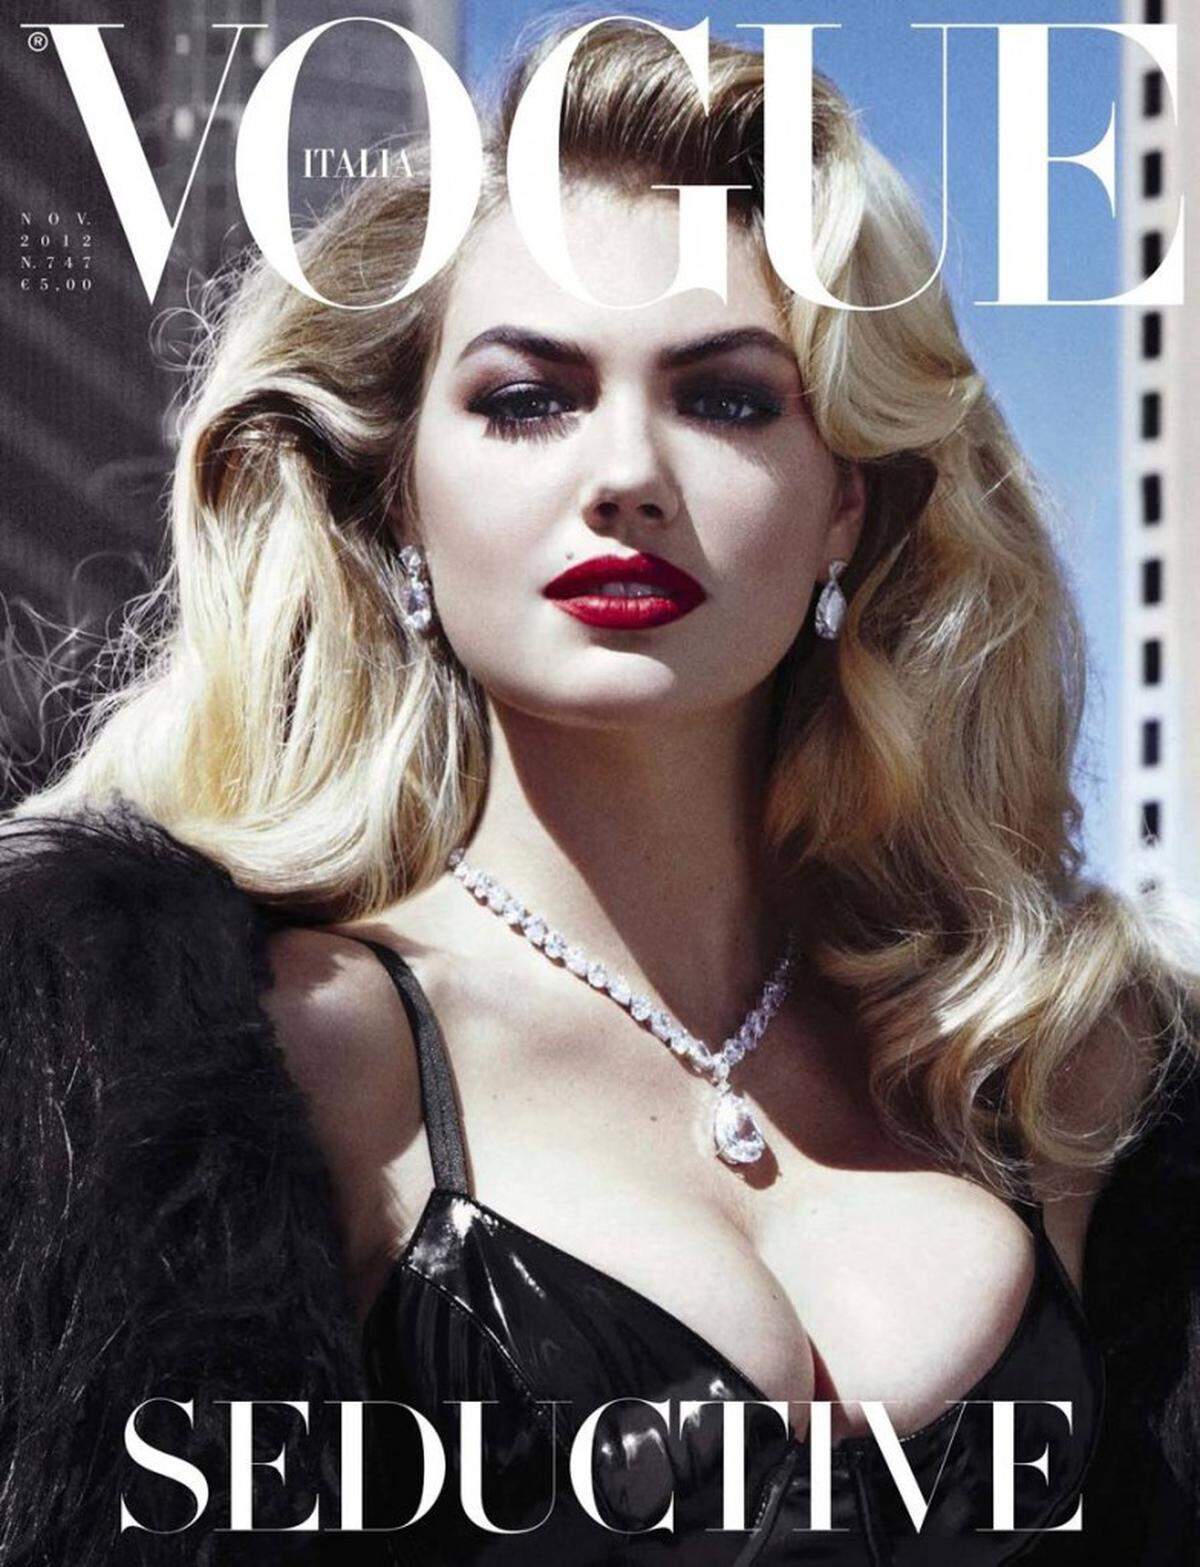 Bikinimodel Kate Upton wurde lange Zeit als zu billig oder ordinär für hochklassige Fotoshootigns angesehen. In diesem Jahr schaffte sie den Durchbruch und war auch auf dem Cover der Vogue zu sehen. Nachlese: Kate Upton - "Ich werde nie hungern um dünn zu sein"